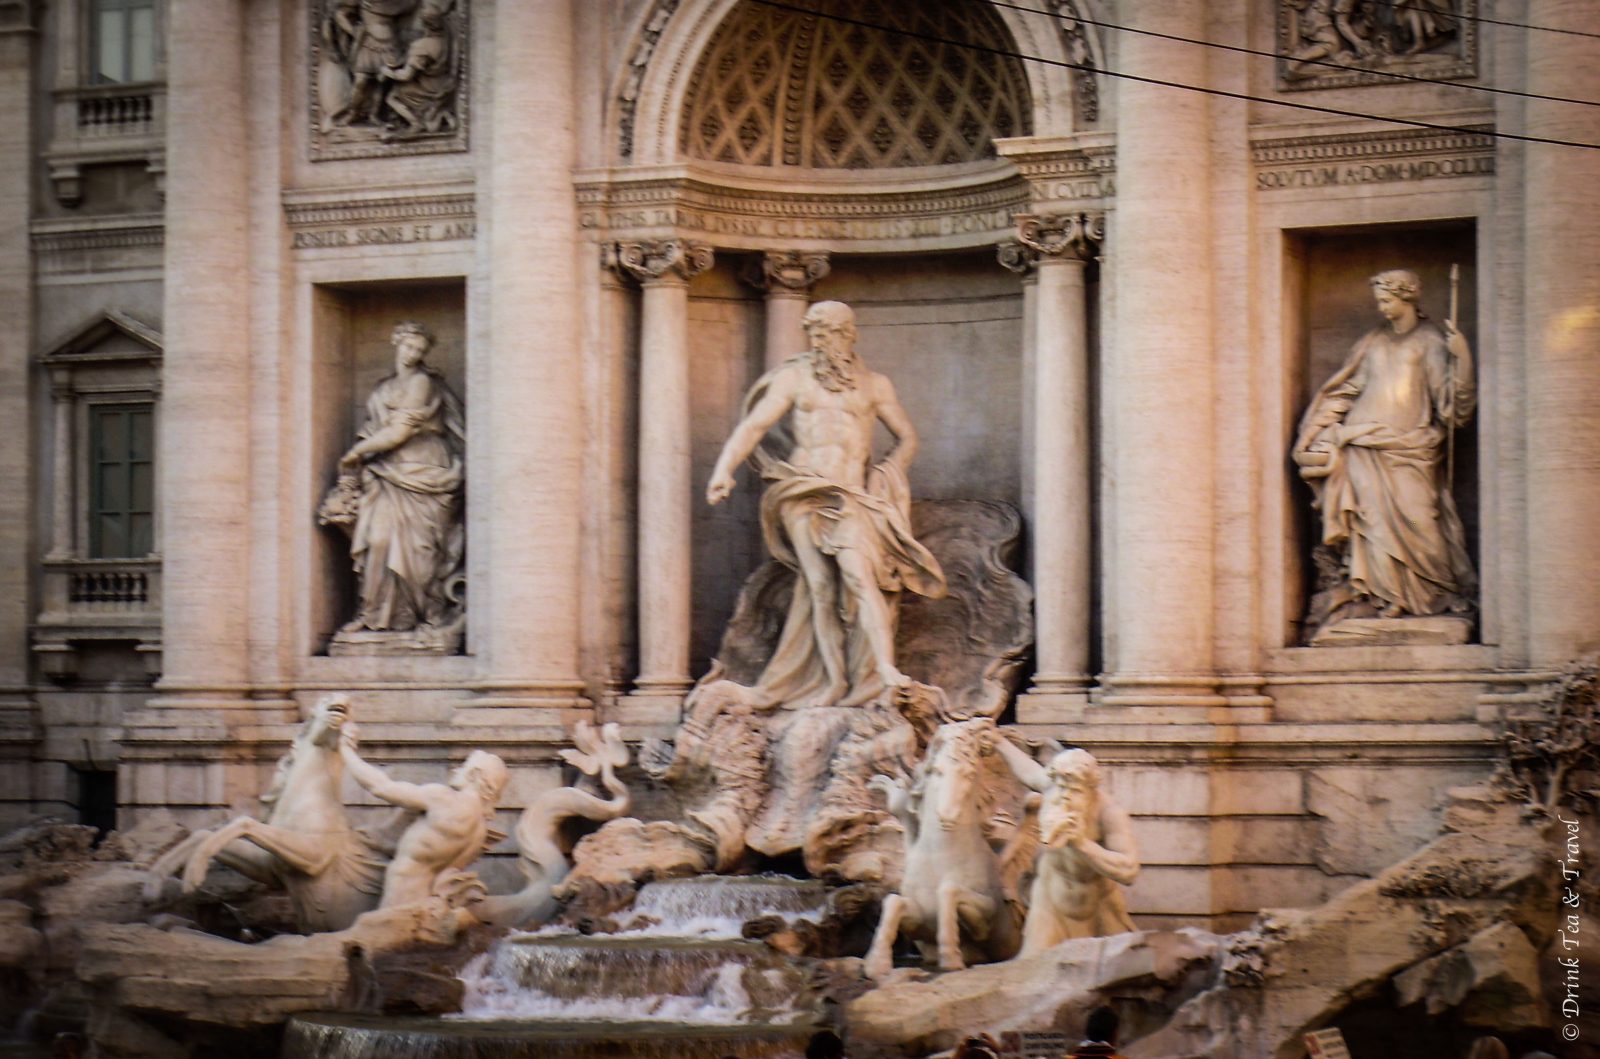 Europe Itinerary: Rome, Italy